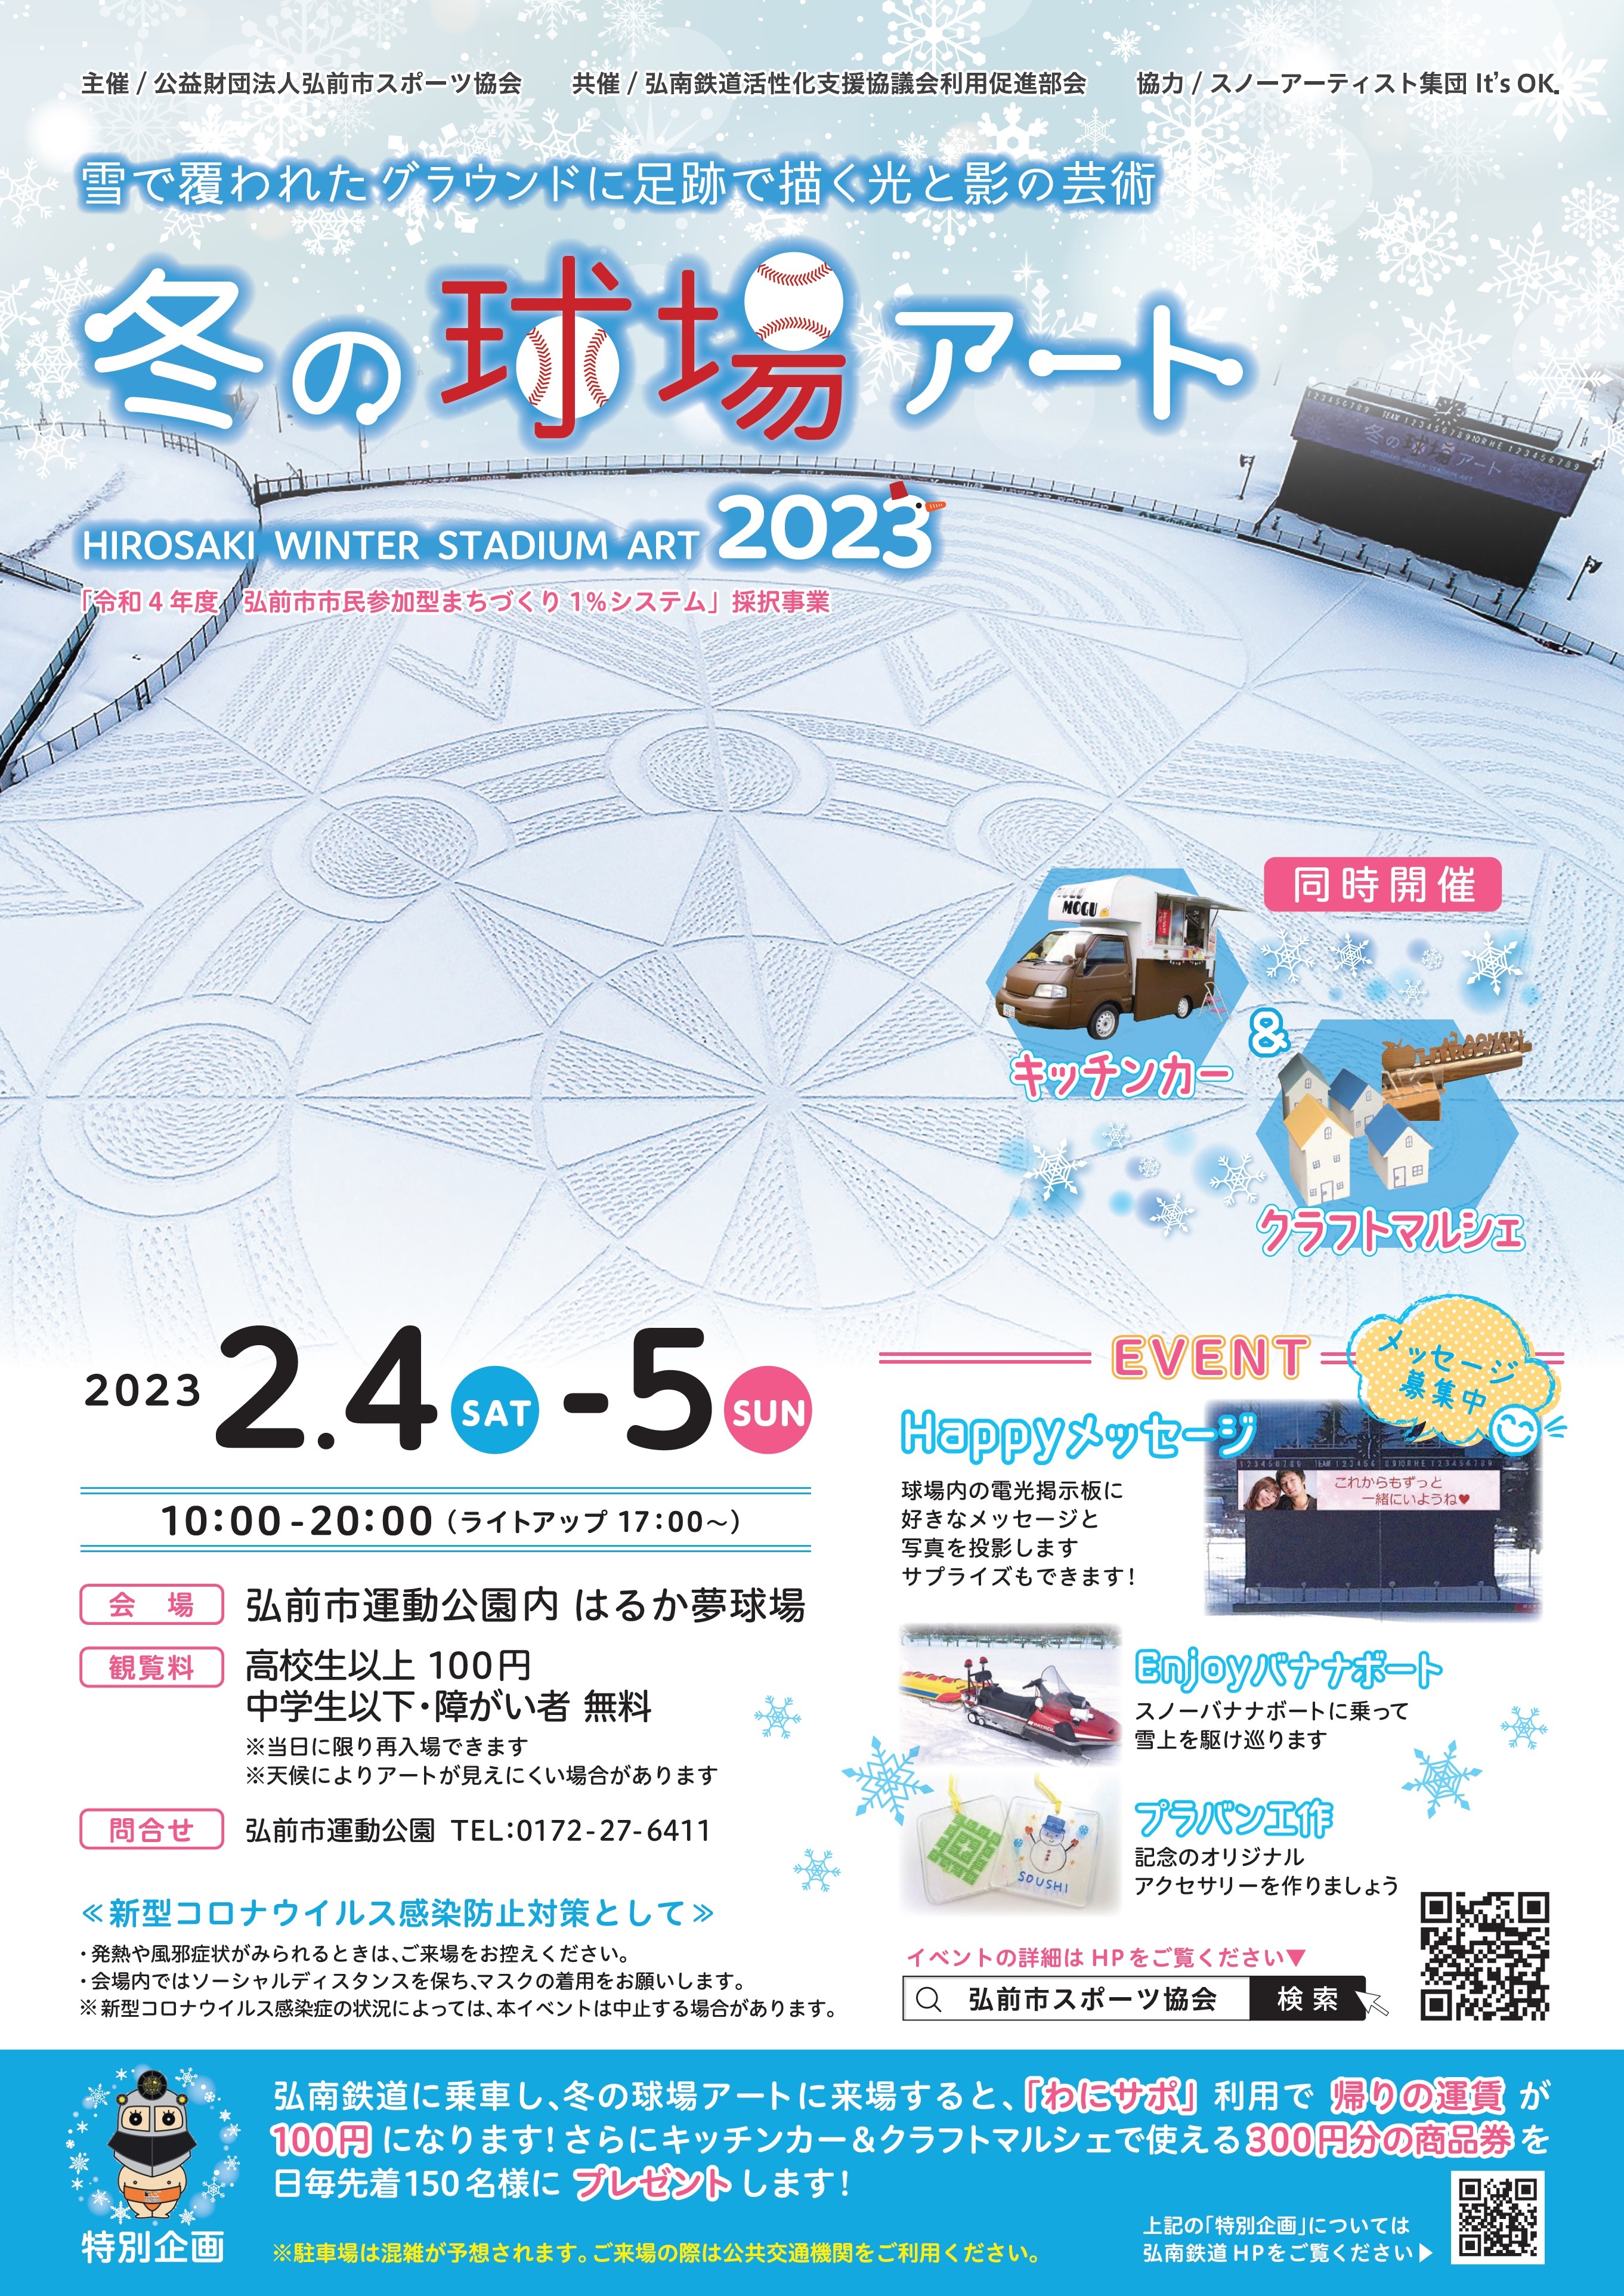 弘前市運動公園「冬の球場アート2023」が2023年2月4日、5日に
開催！雪に覆われたグラウンドに巨大な幾何学模様が出現